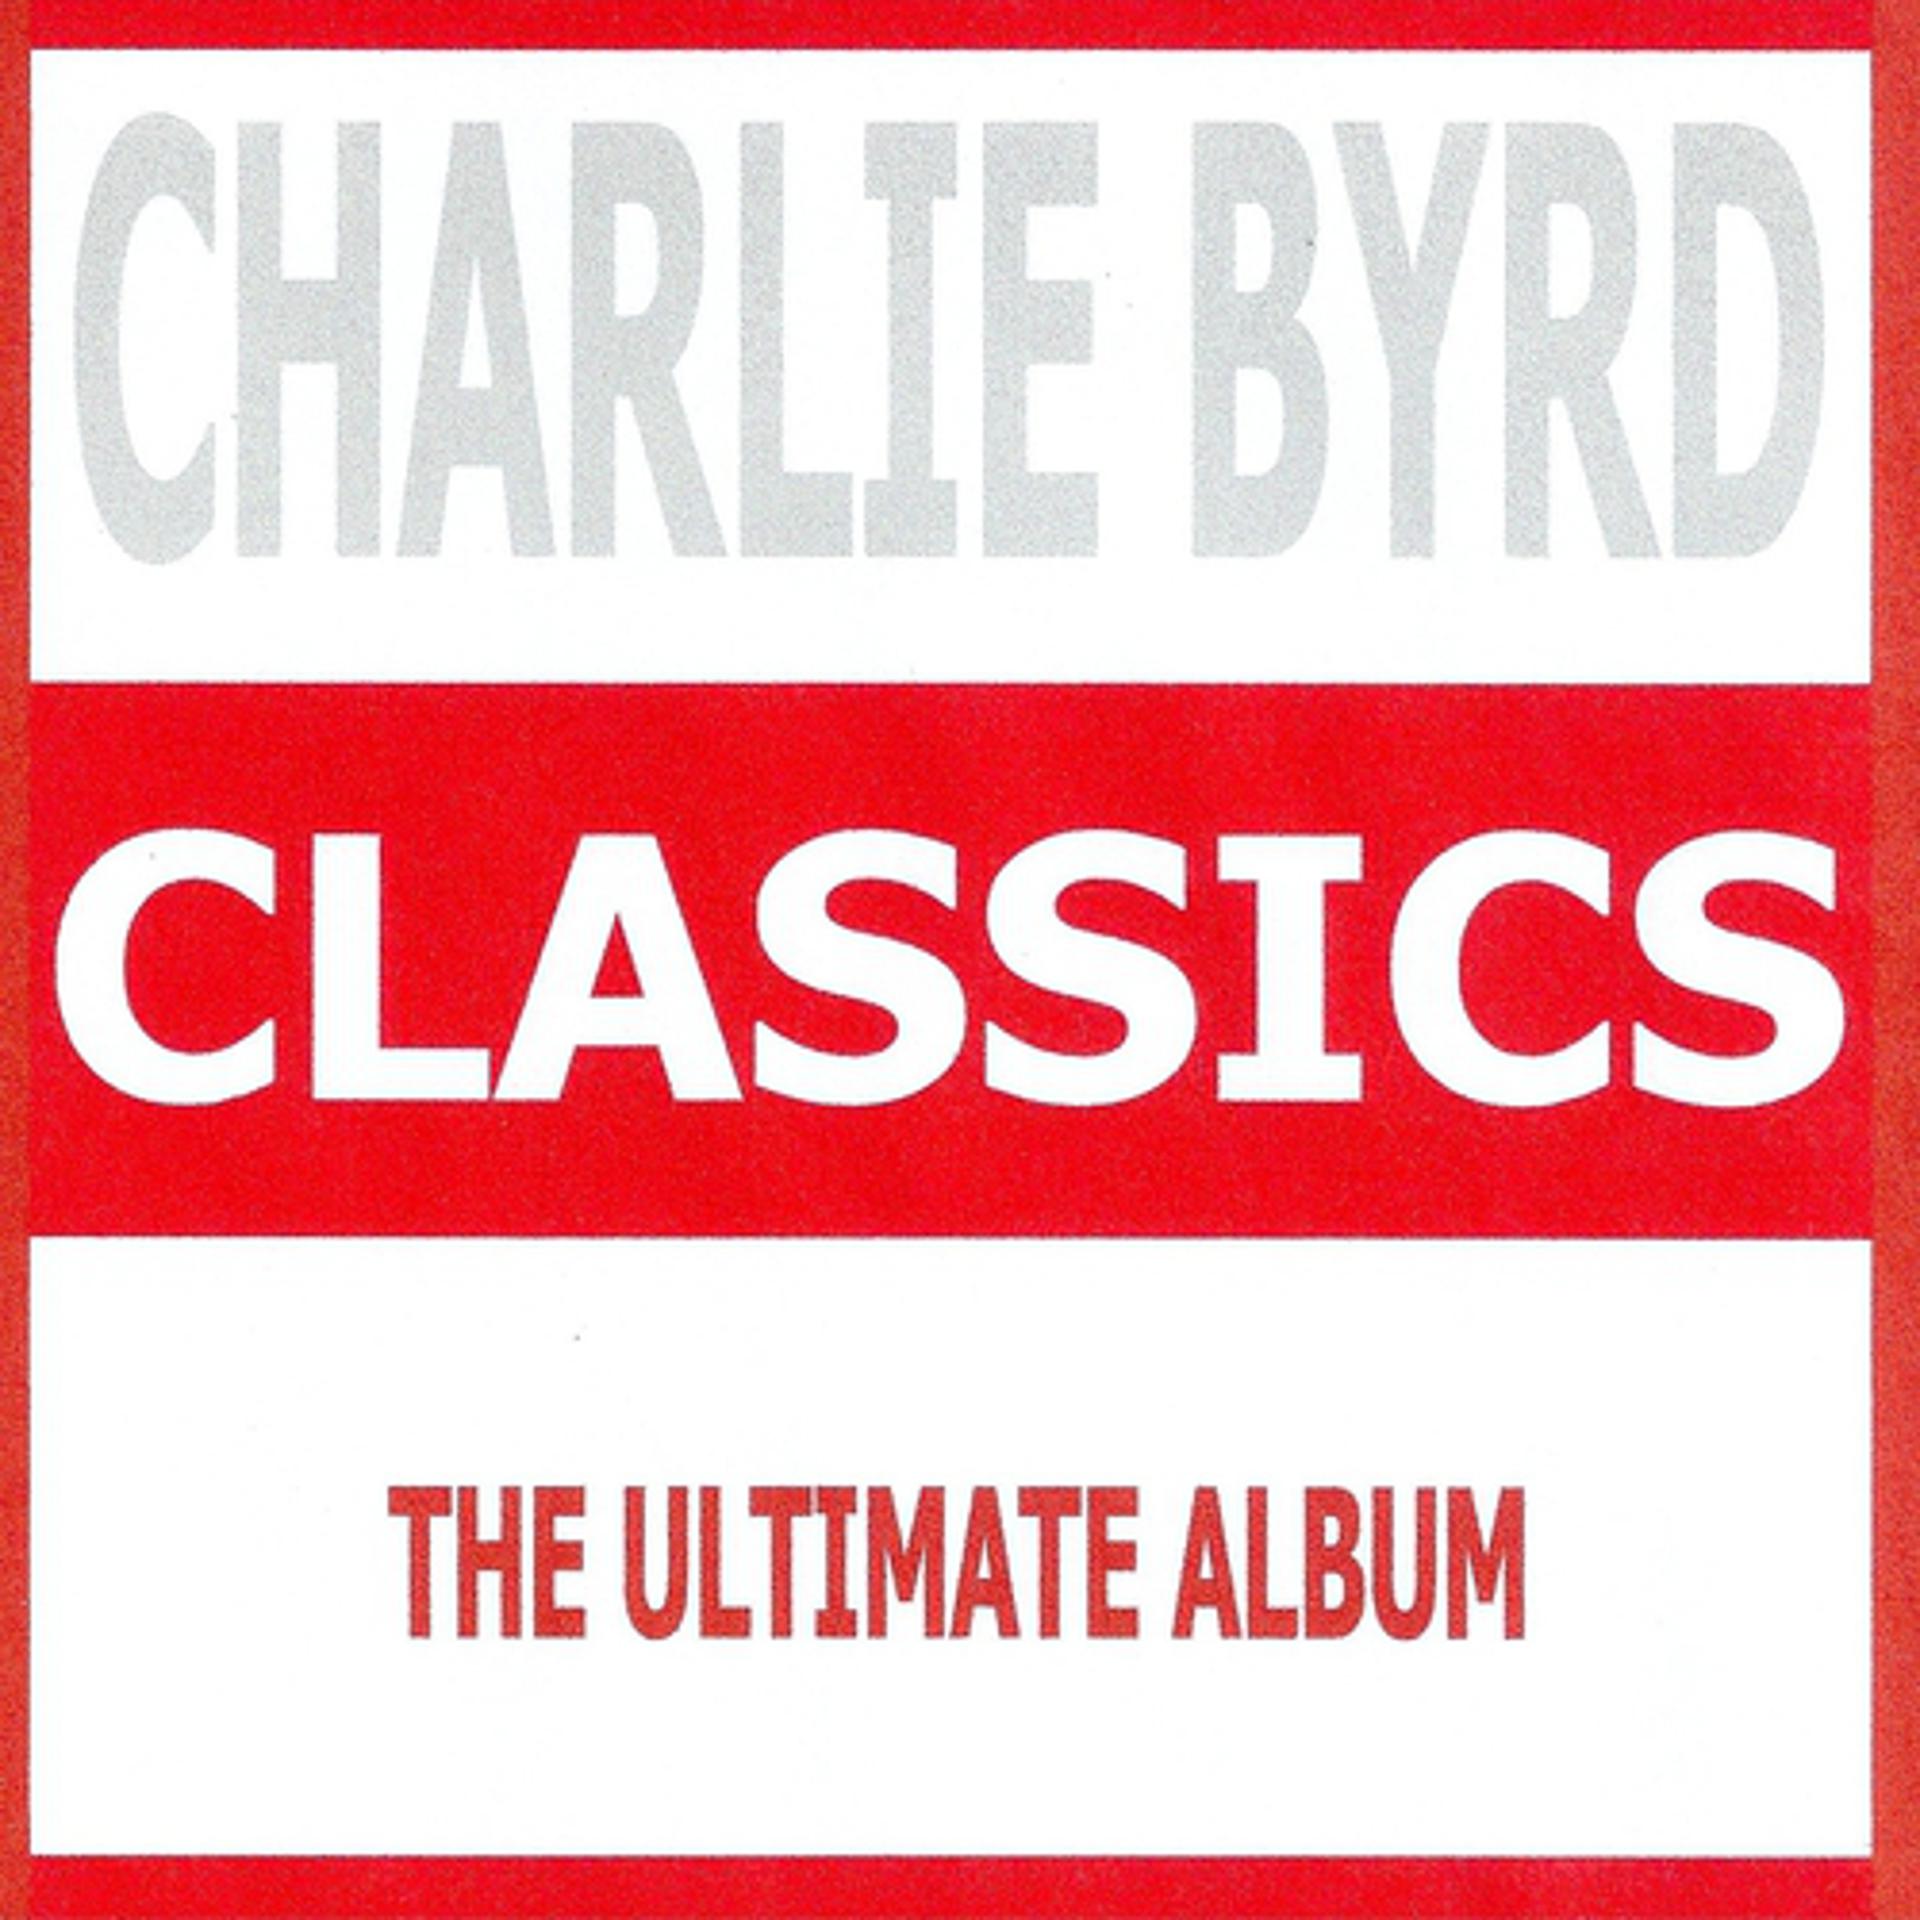 Постер альбома Classics - Charlie Byrd